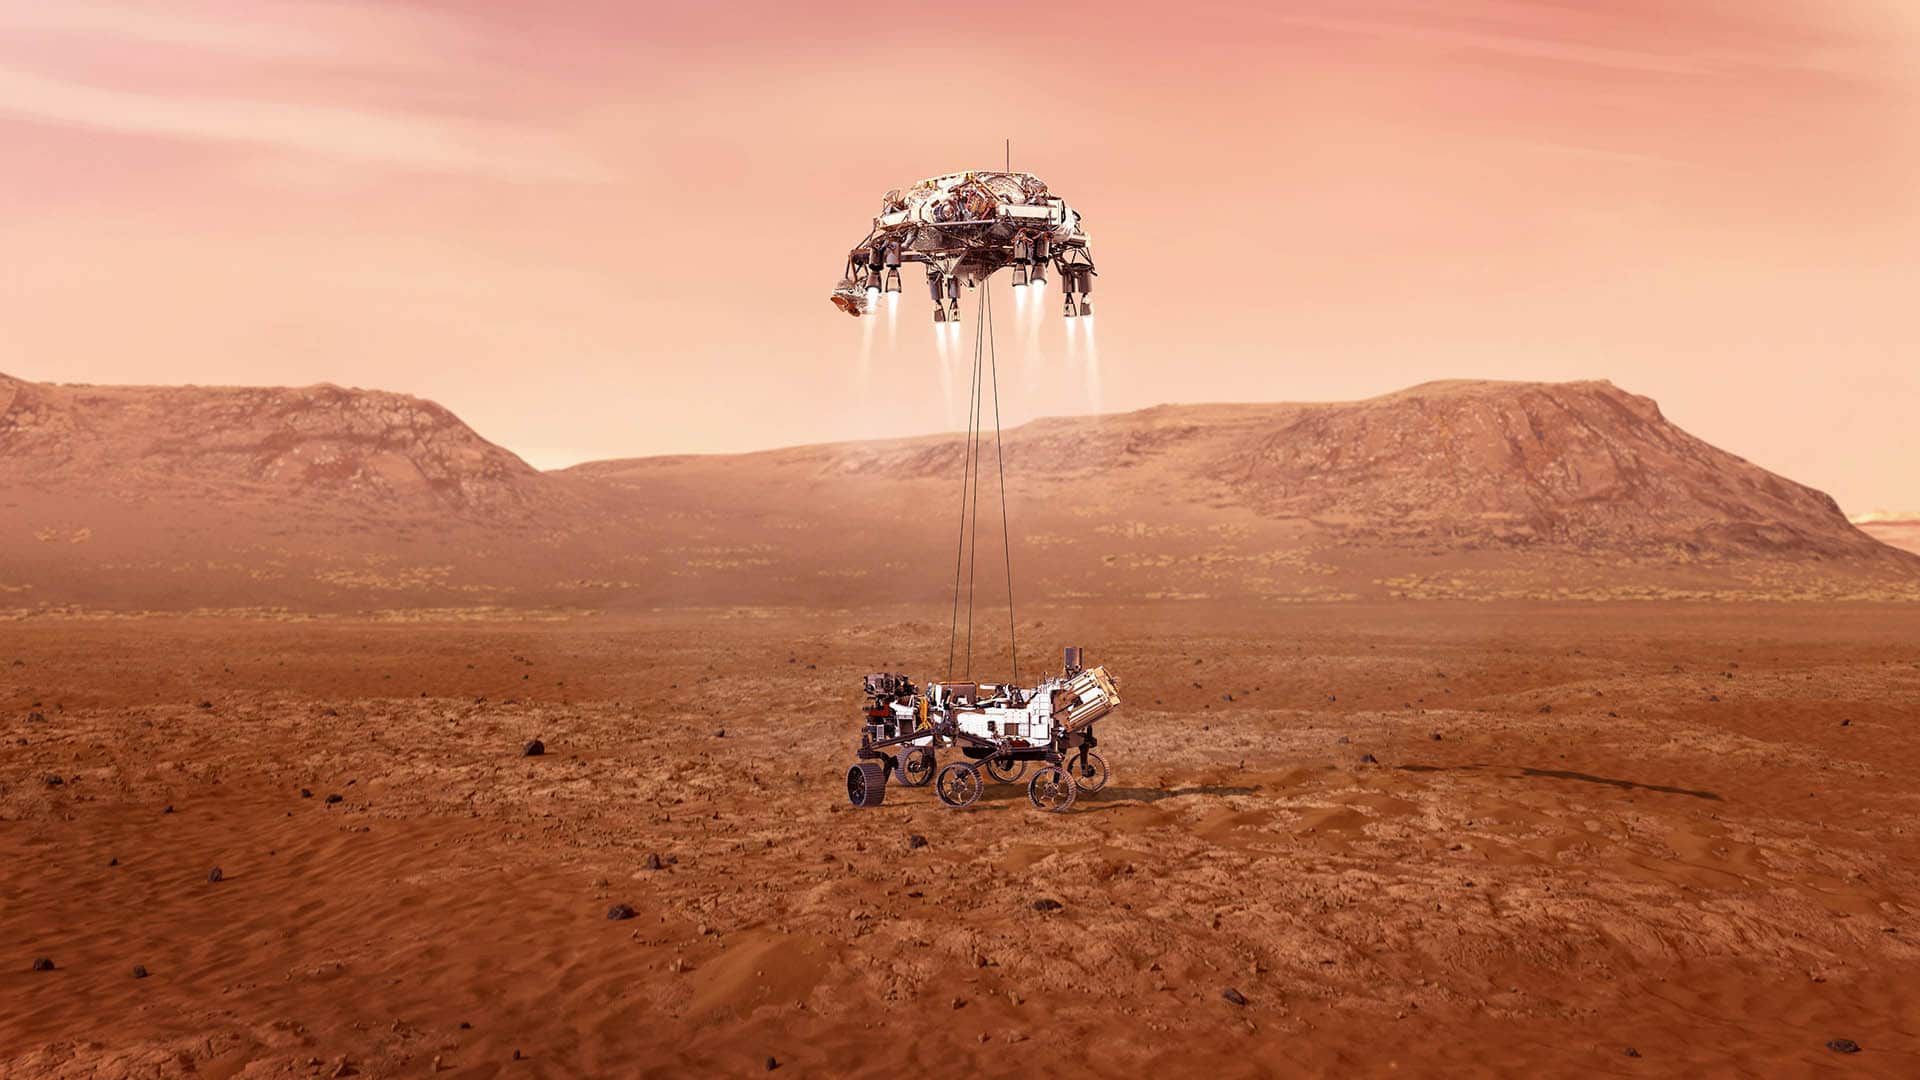 Am 18. Februar 2021 landete die Mars-Sonde „Perseverance“ der NASA auf dem Mars. Manche fragen sich: Wenn sie Leben auf dem Planeten entdecken würde, was bedeutete das für den christlichen Glauben?